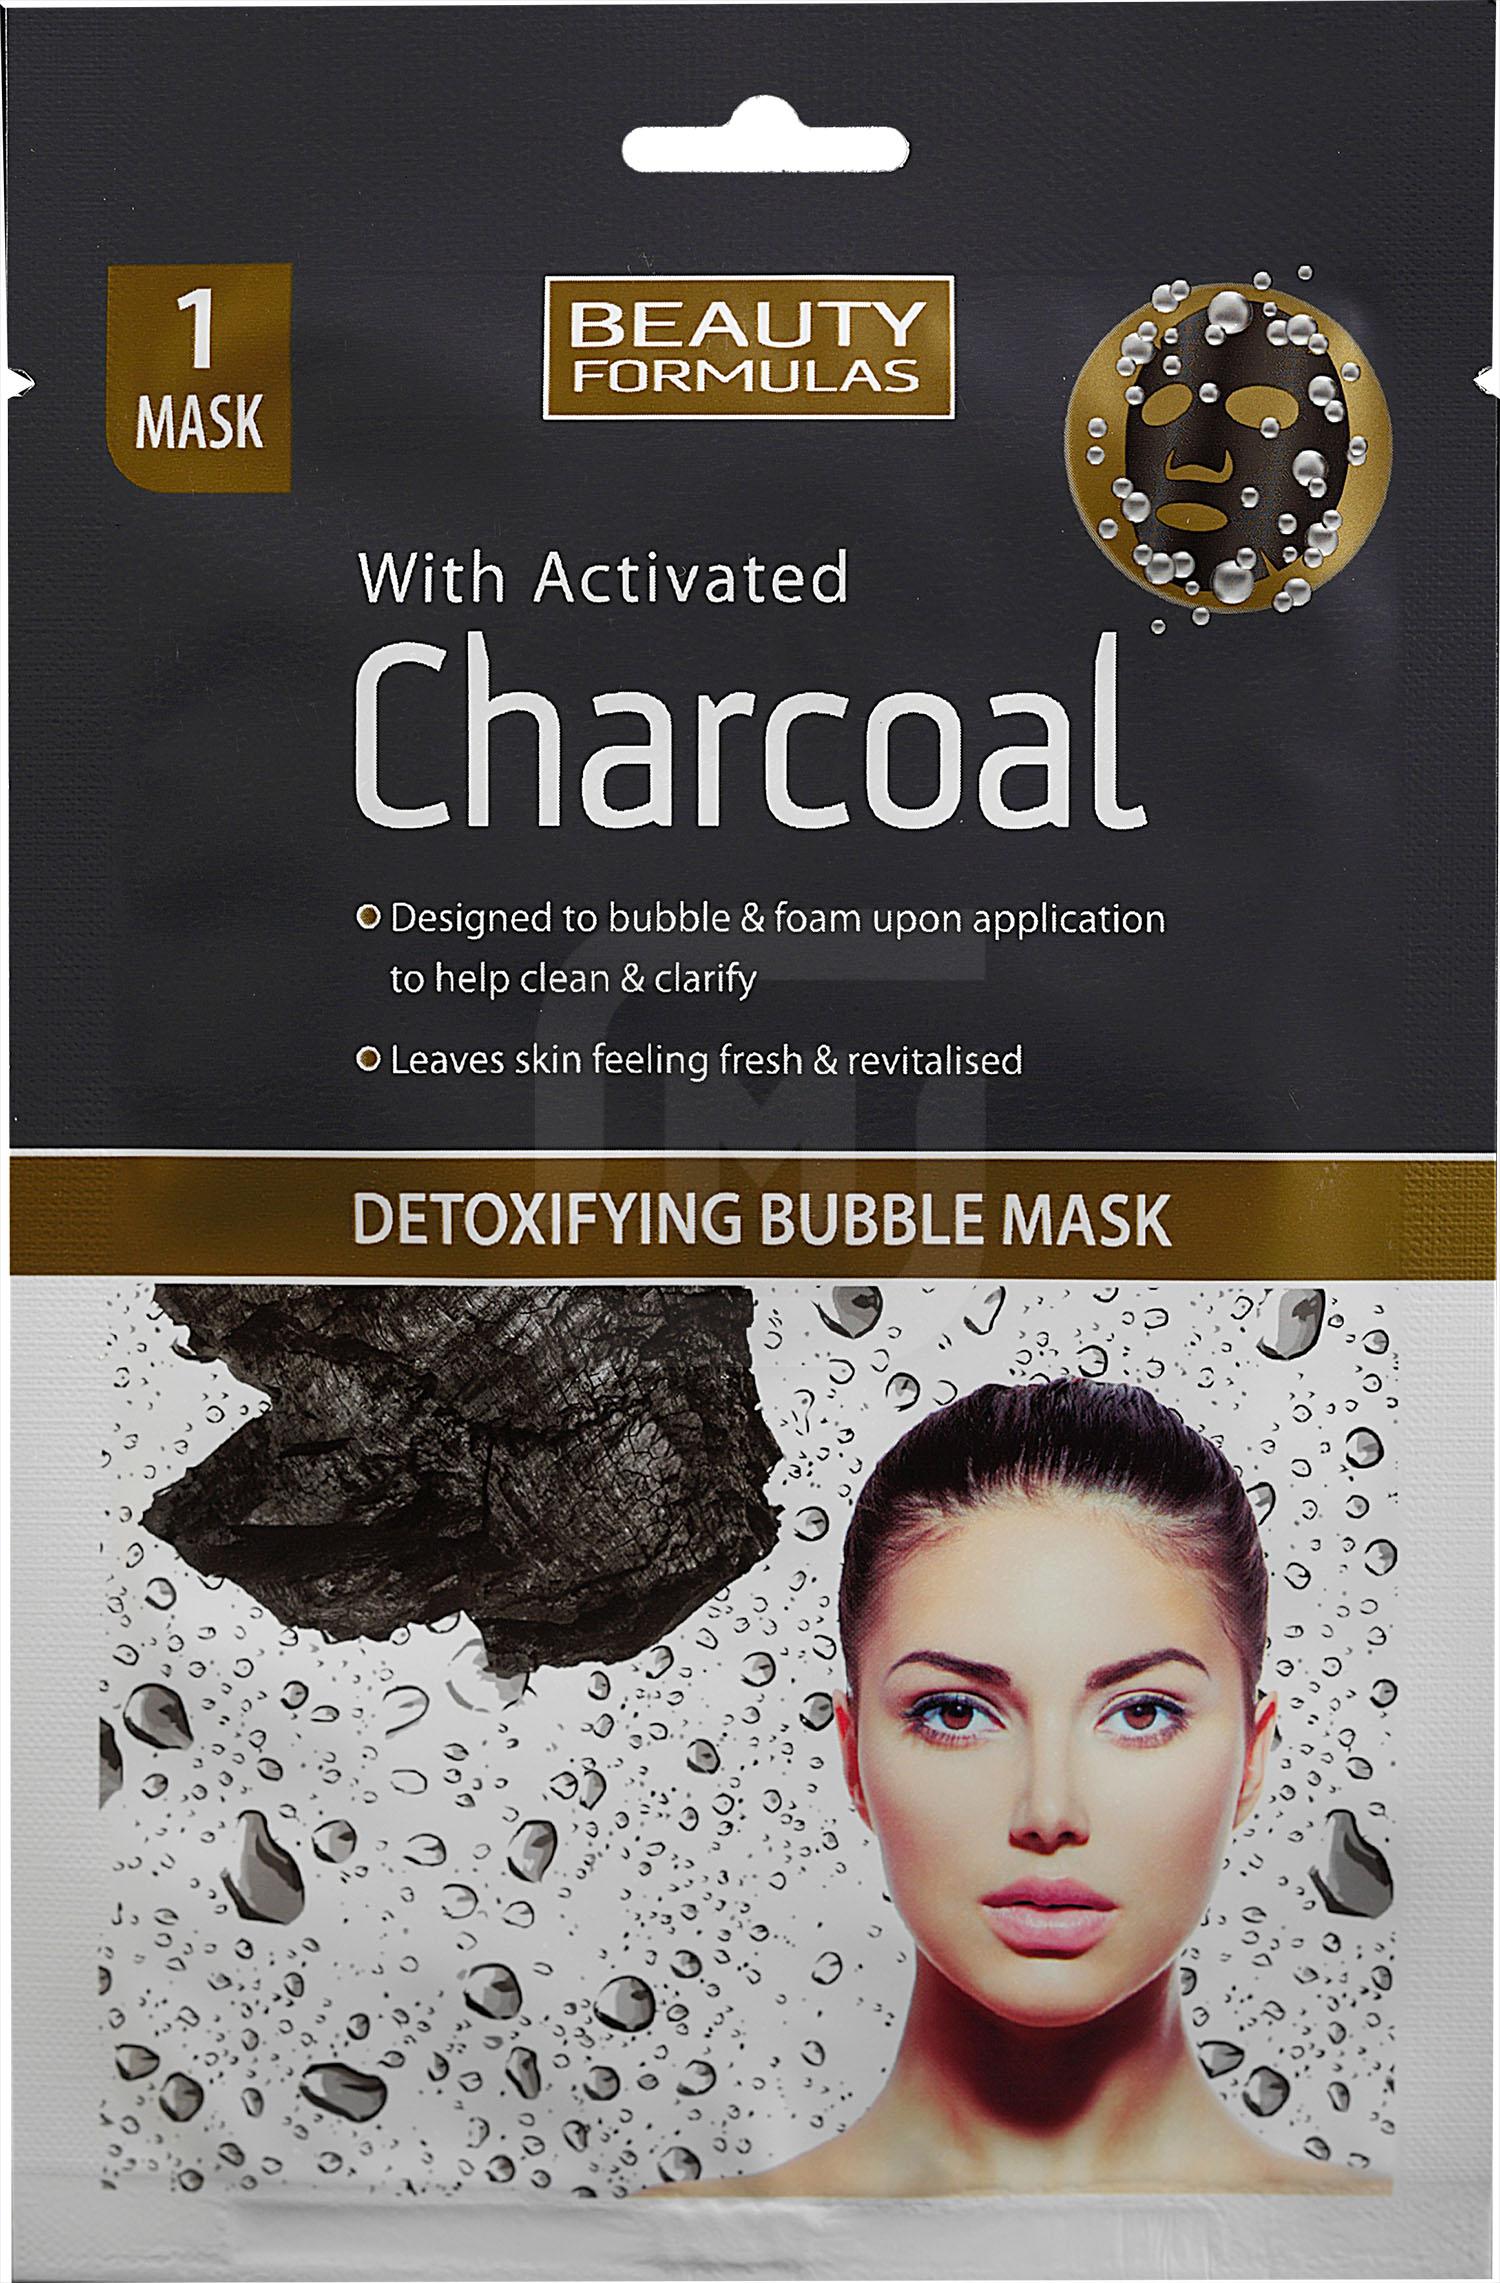 Маска глиняная для лица Beauty Formulas с активированным углем 1 шт invit маска для лица face detox mask salicylic acid 2% charoal powder 50